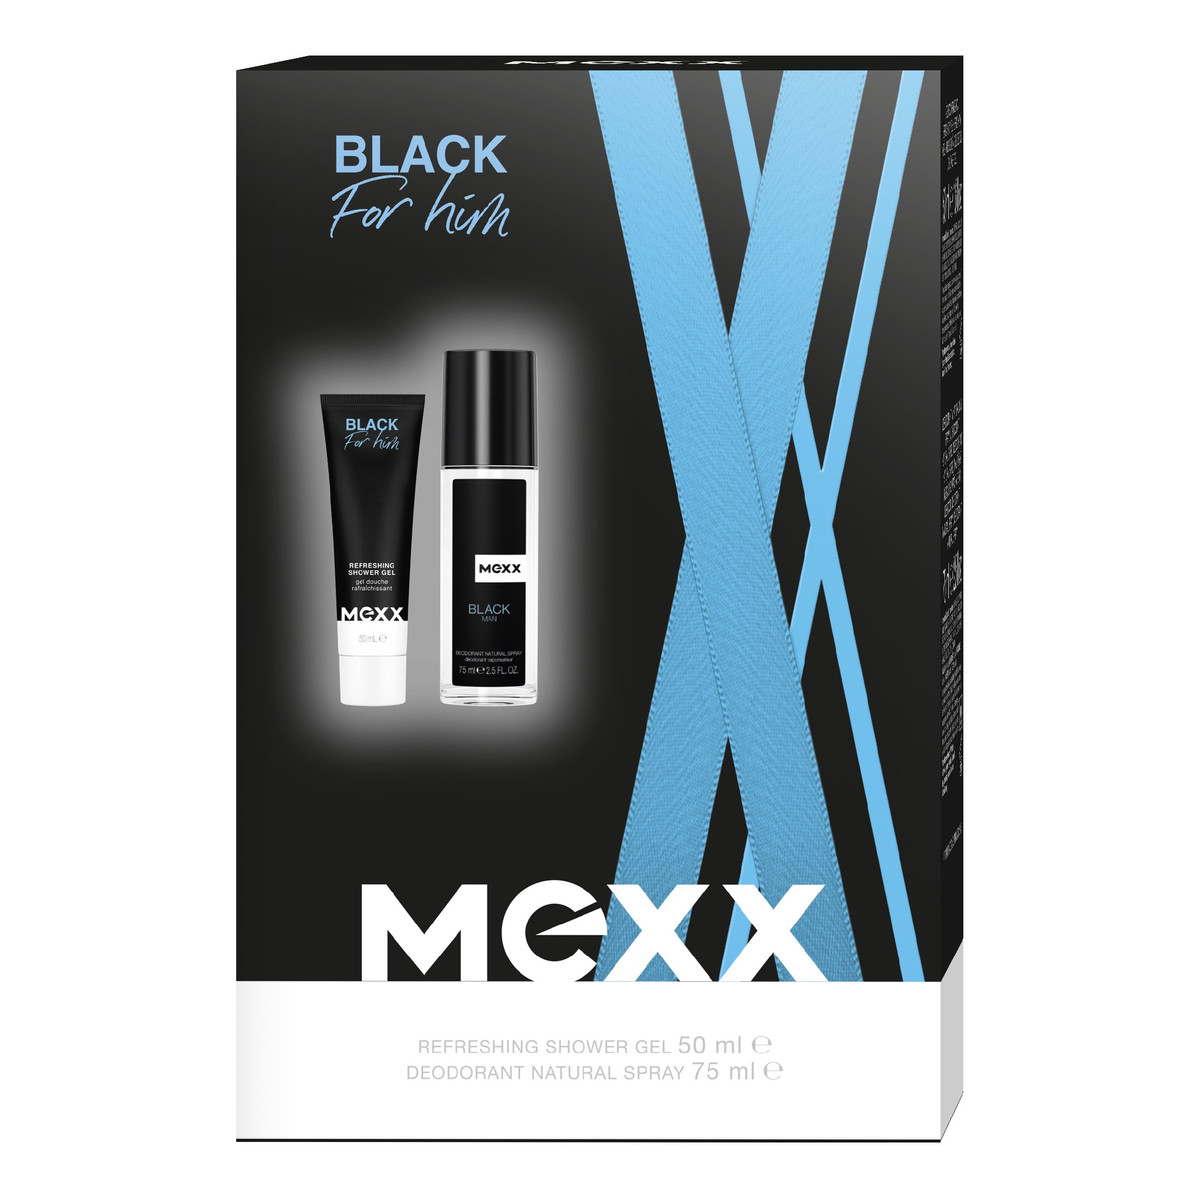 Mexx Black for Him Zestaw prezentowy (żel pod prysznic 50ml+ deo naturalny spray 75ml)